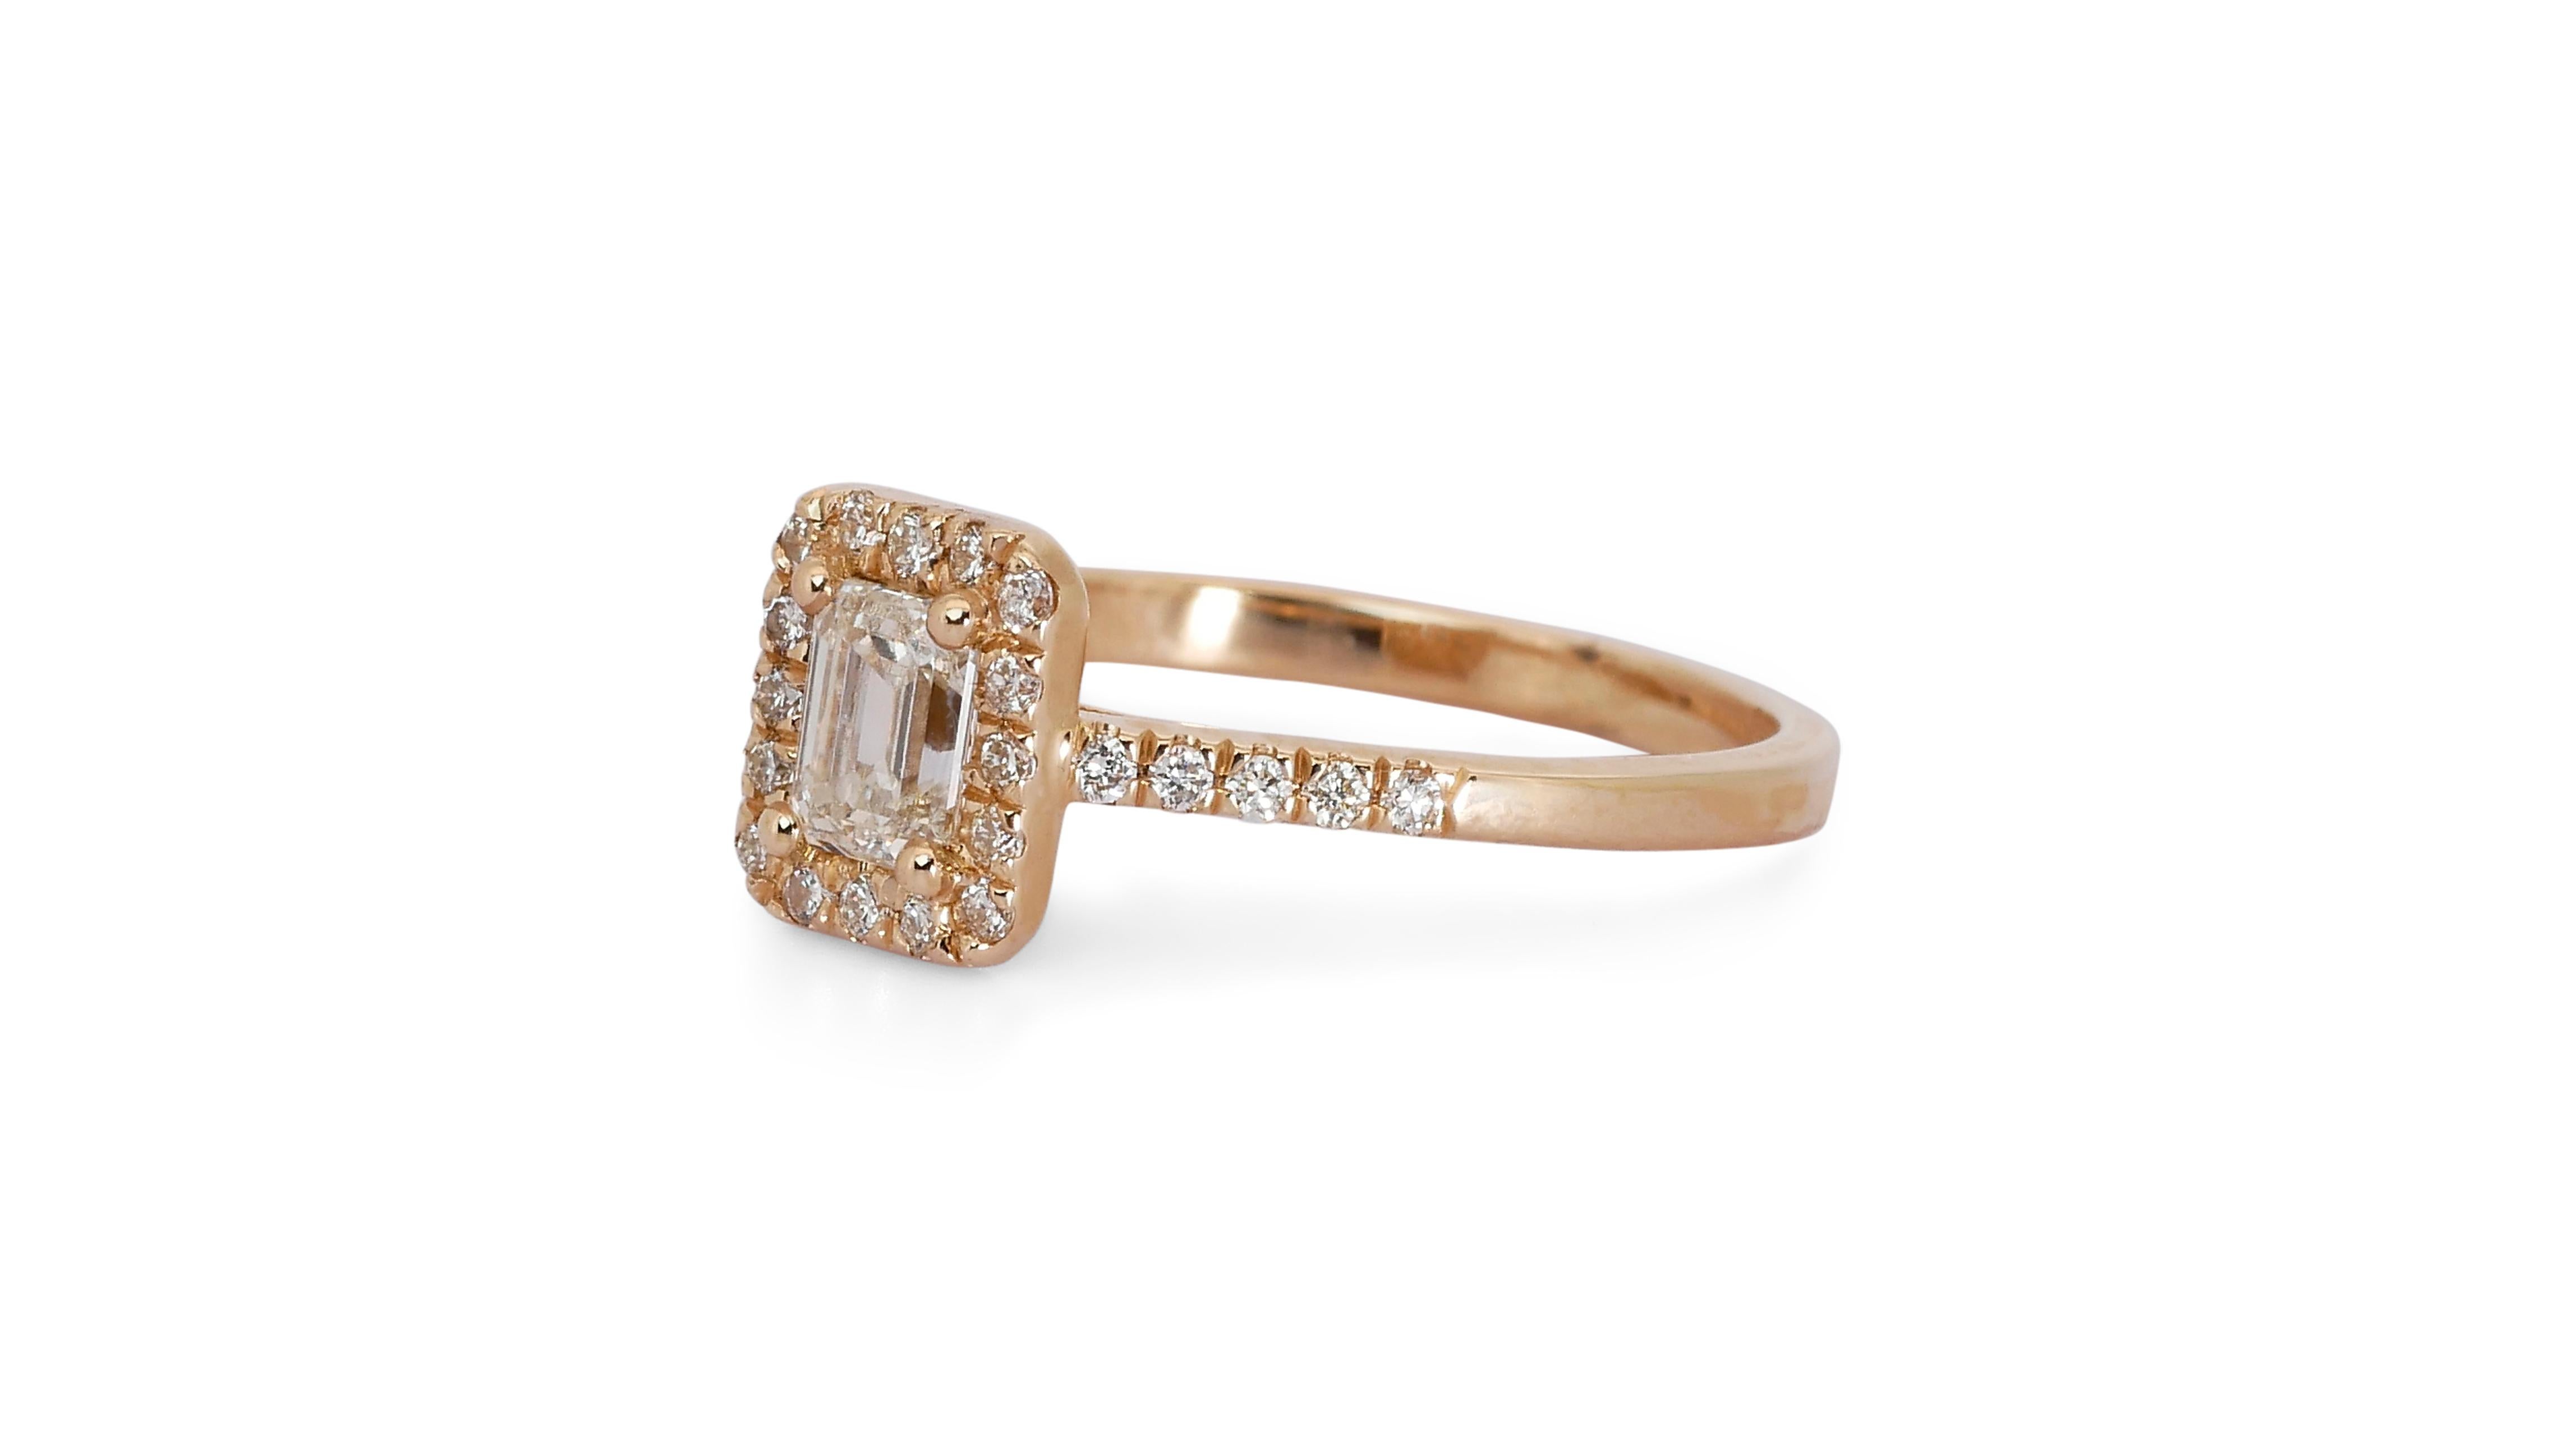 Women's Ravishing 18k Rose Gold Halo Ring w/ 0.84 Carat Natural Diamonds IGI Cert For Sale